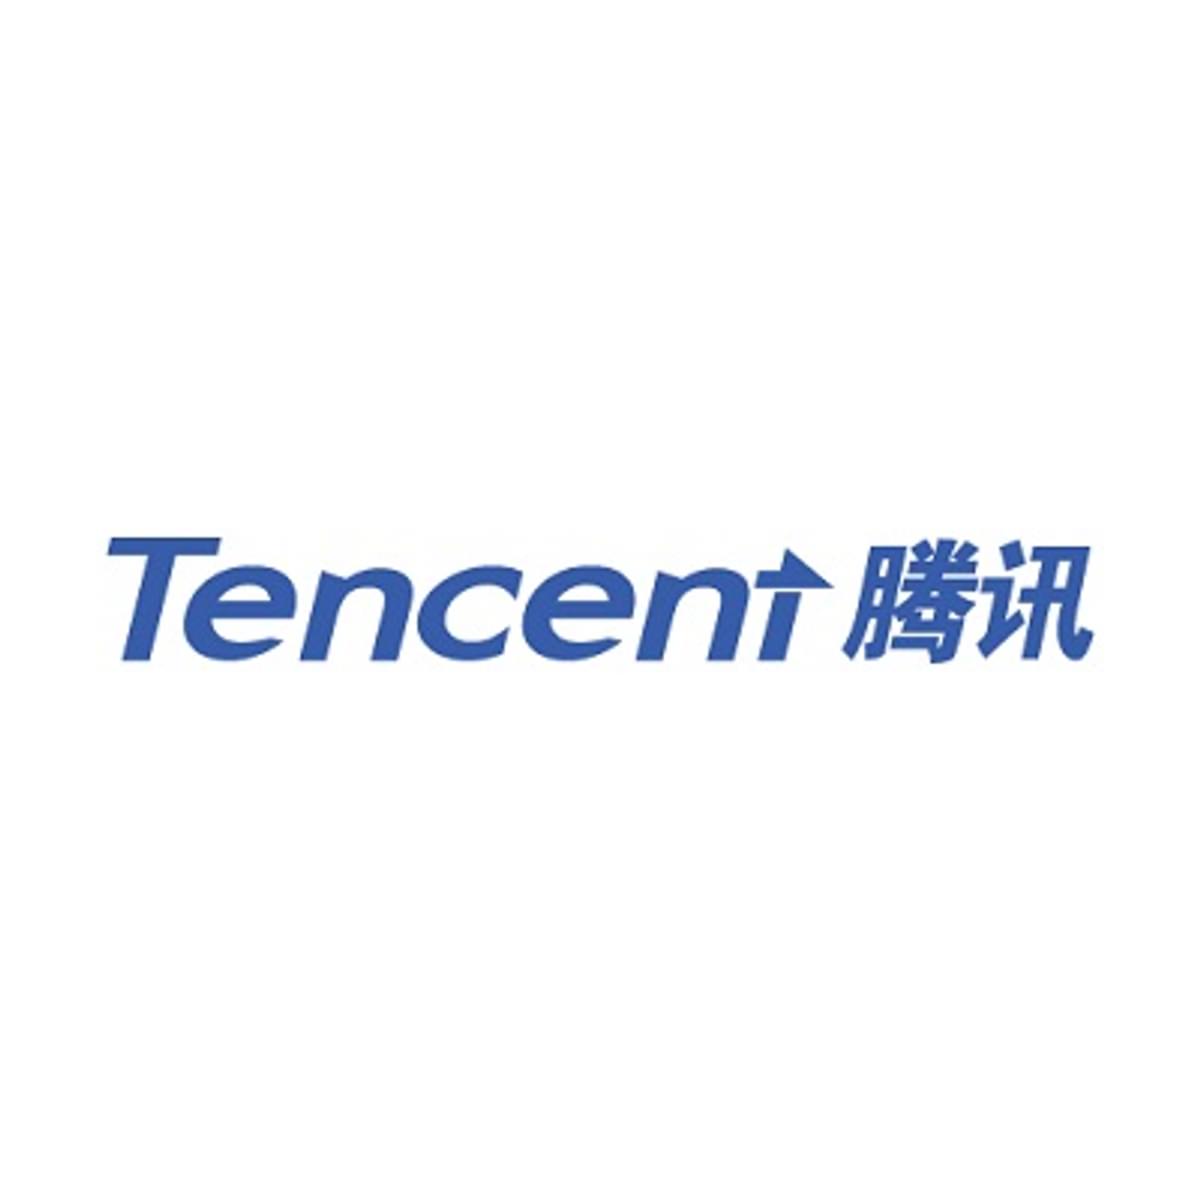 Tencent boekt mooie groeicijfers image